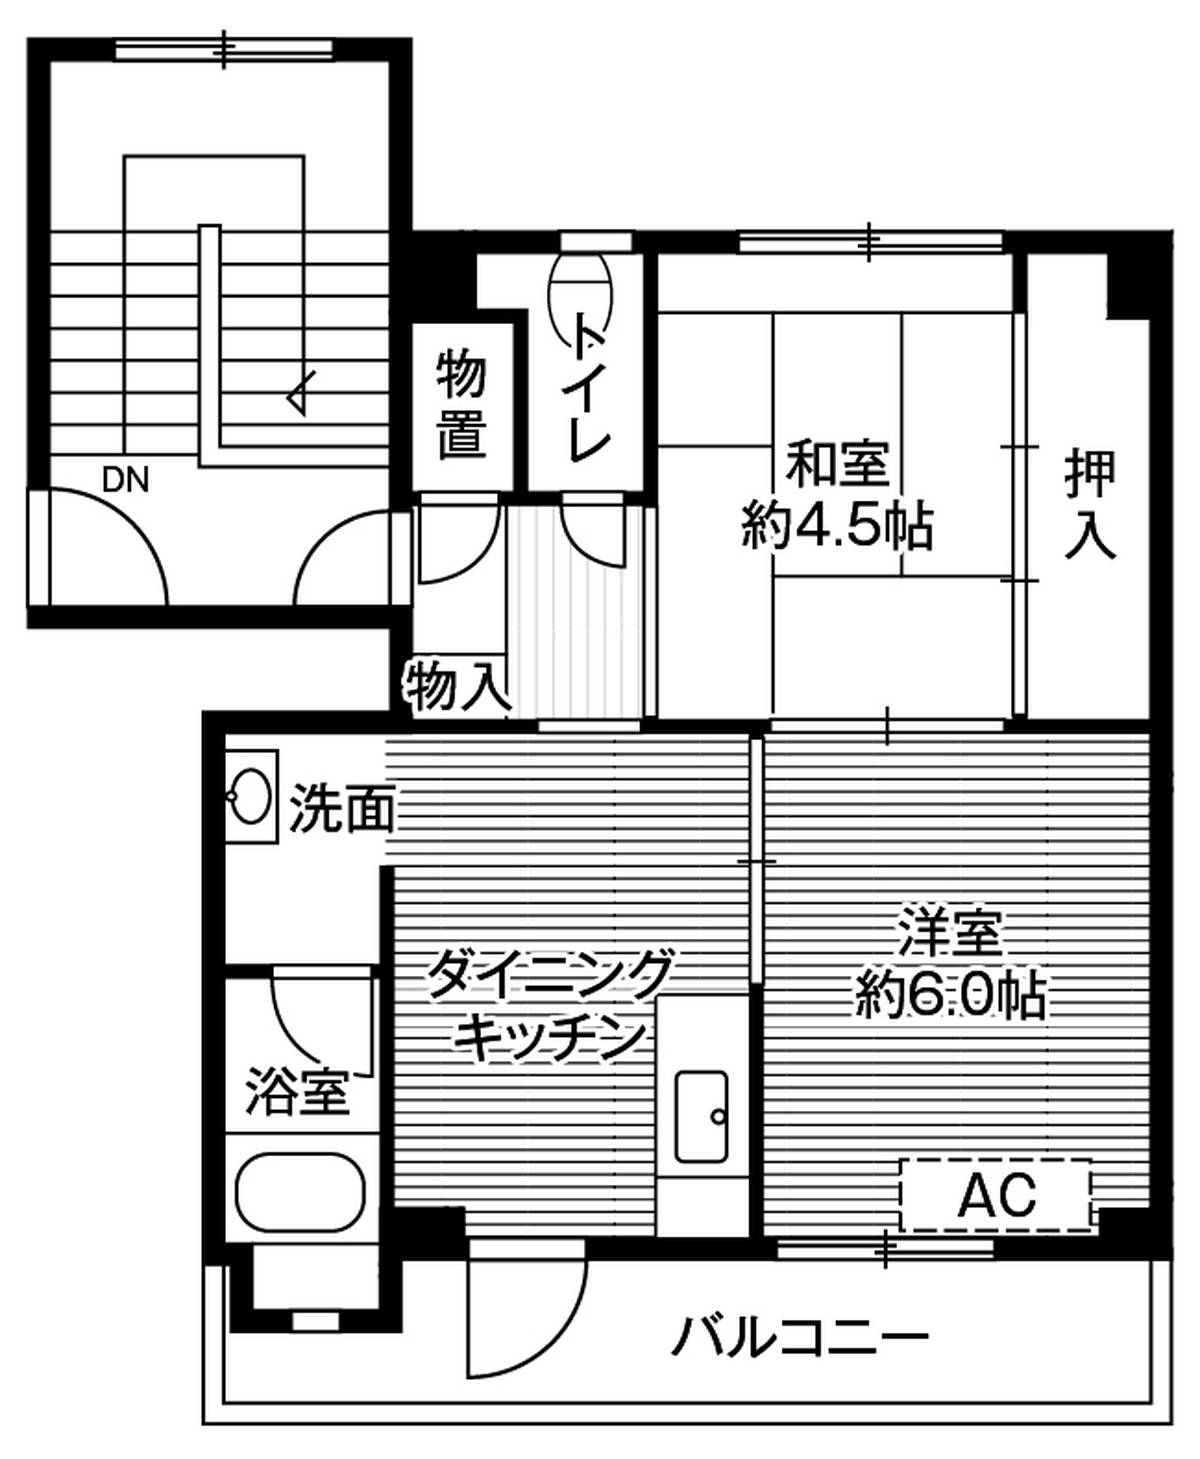 2DK floorplan of Village House Osanai in Kuji-shi